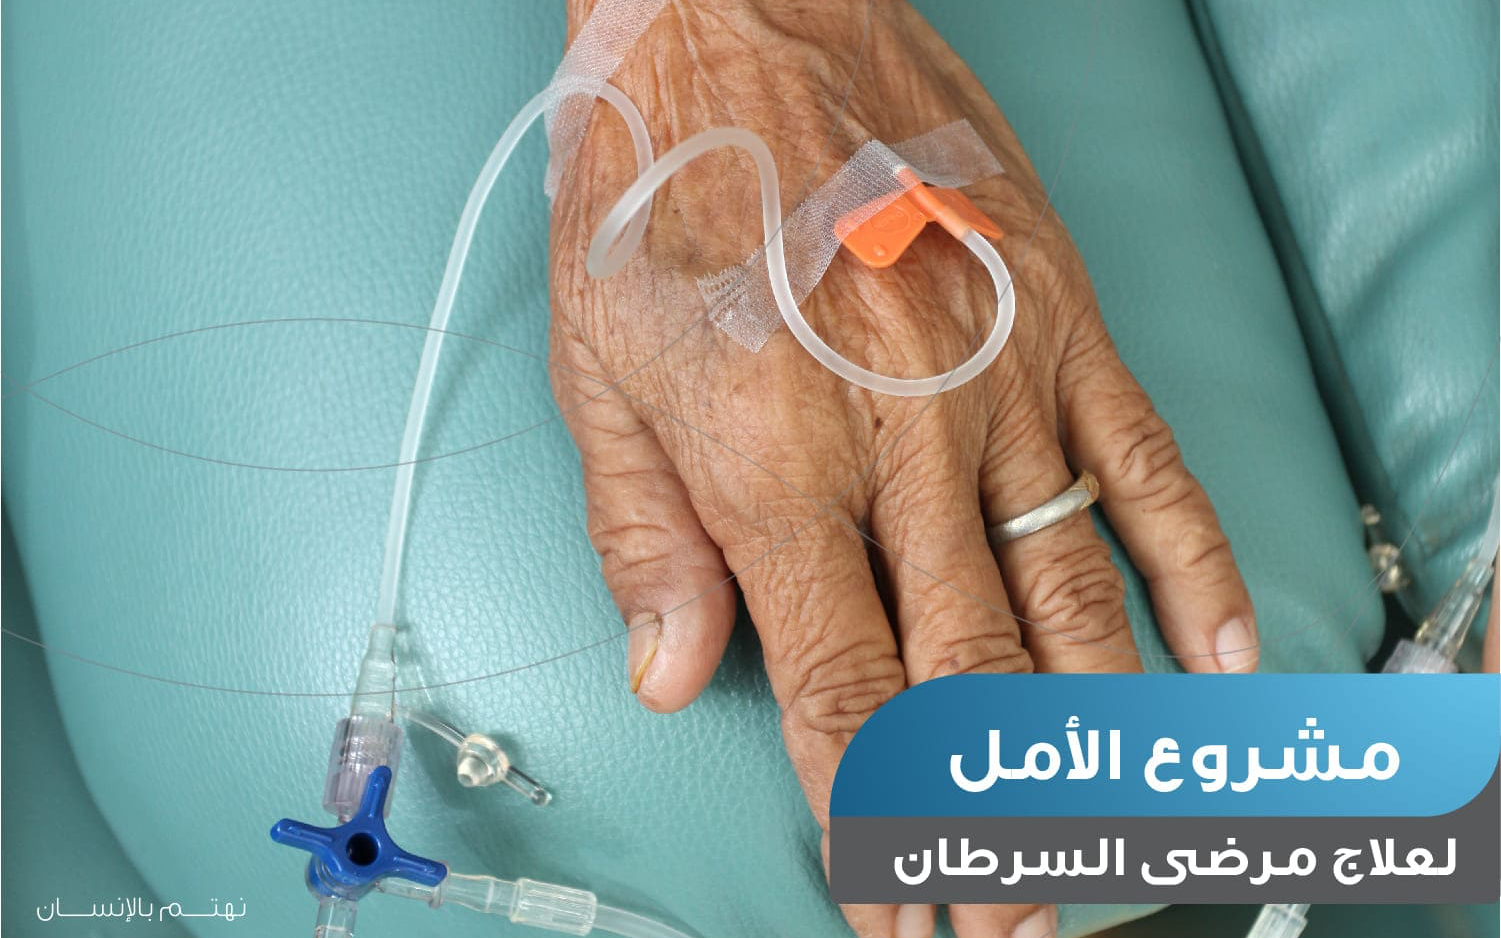 مشروع الأمل لعلاج مرضى السرطان داخل الكويت - photo